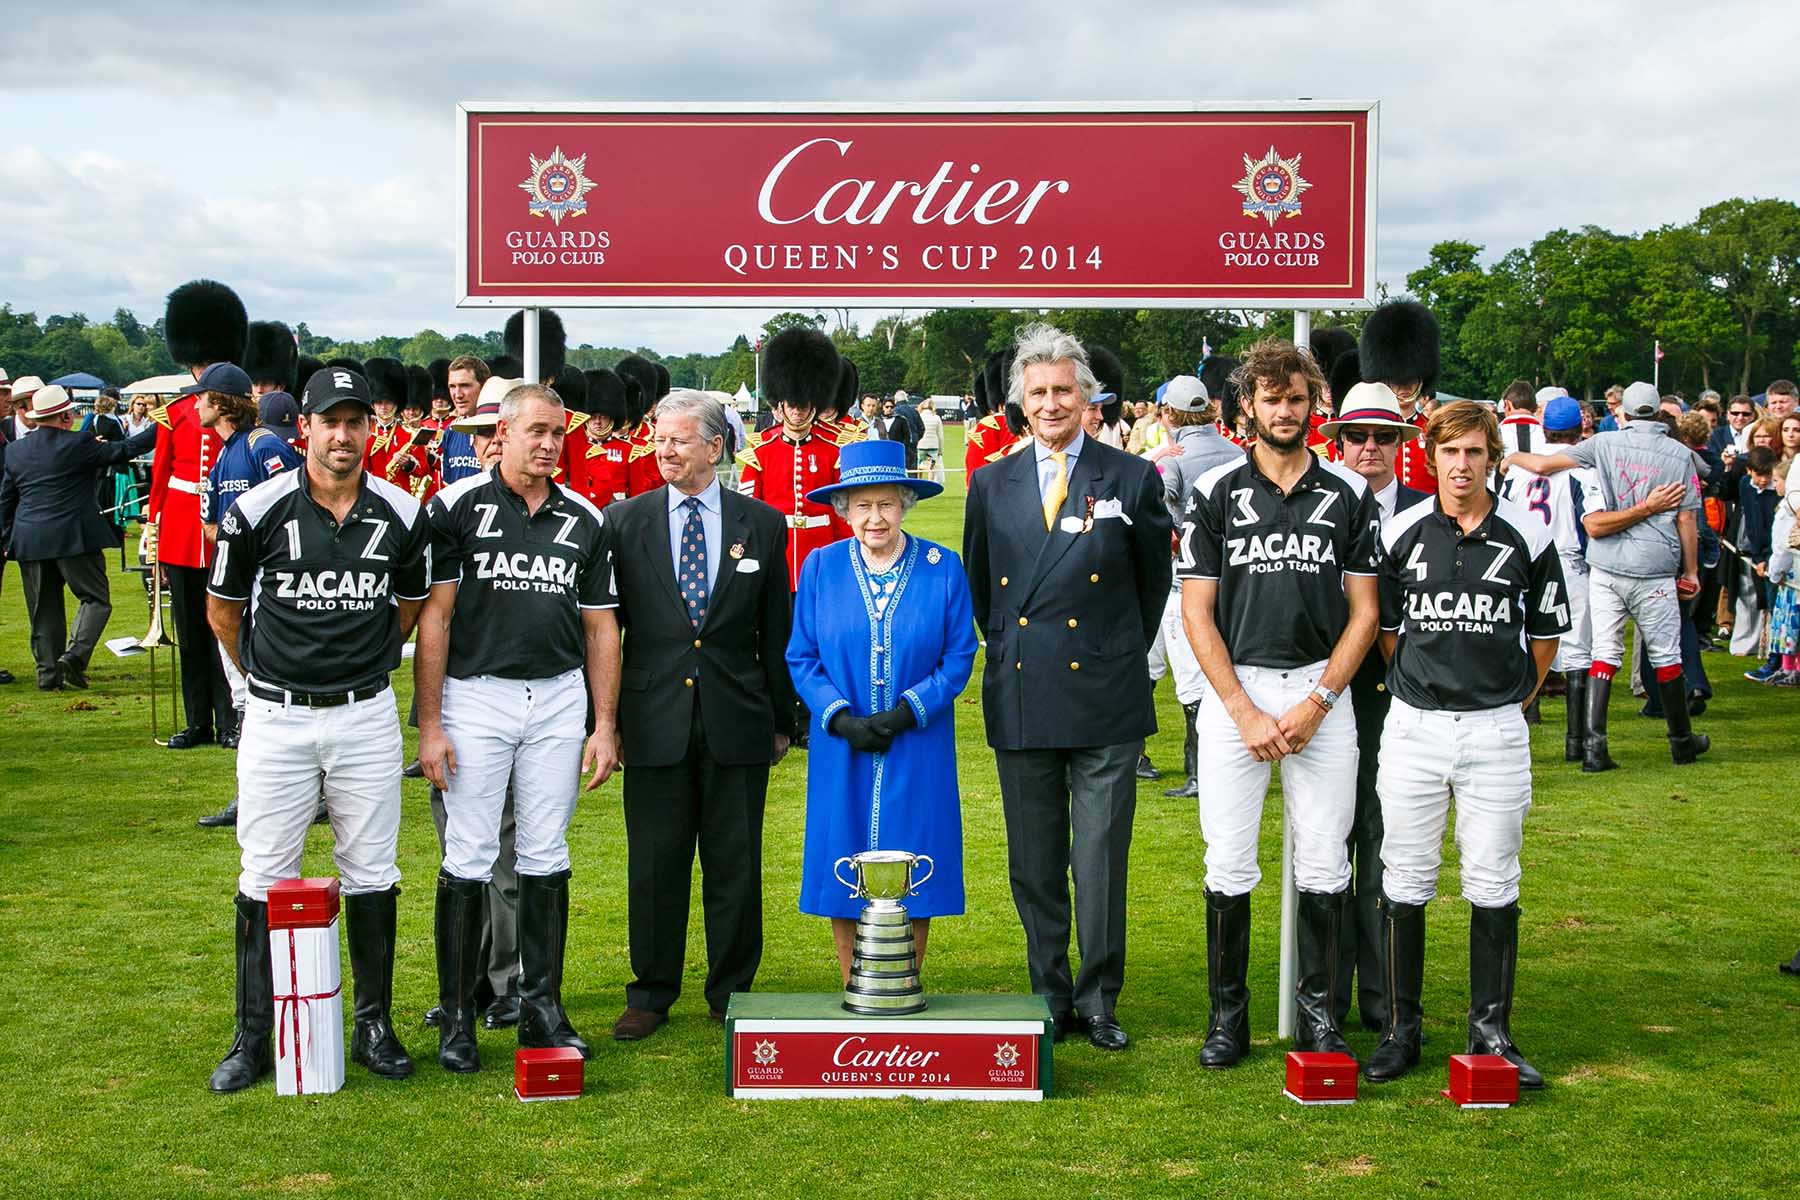 34. Cartier Queens Cup winners team